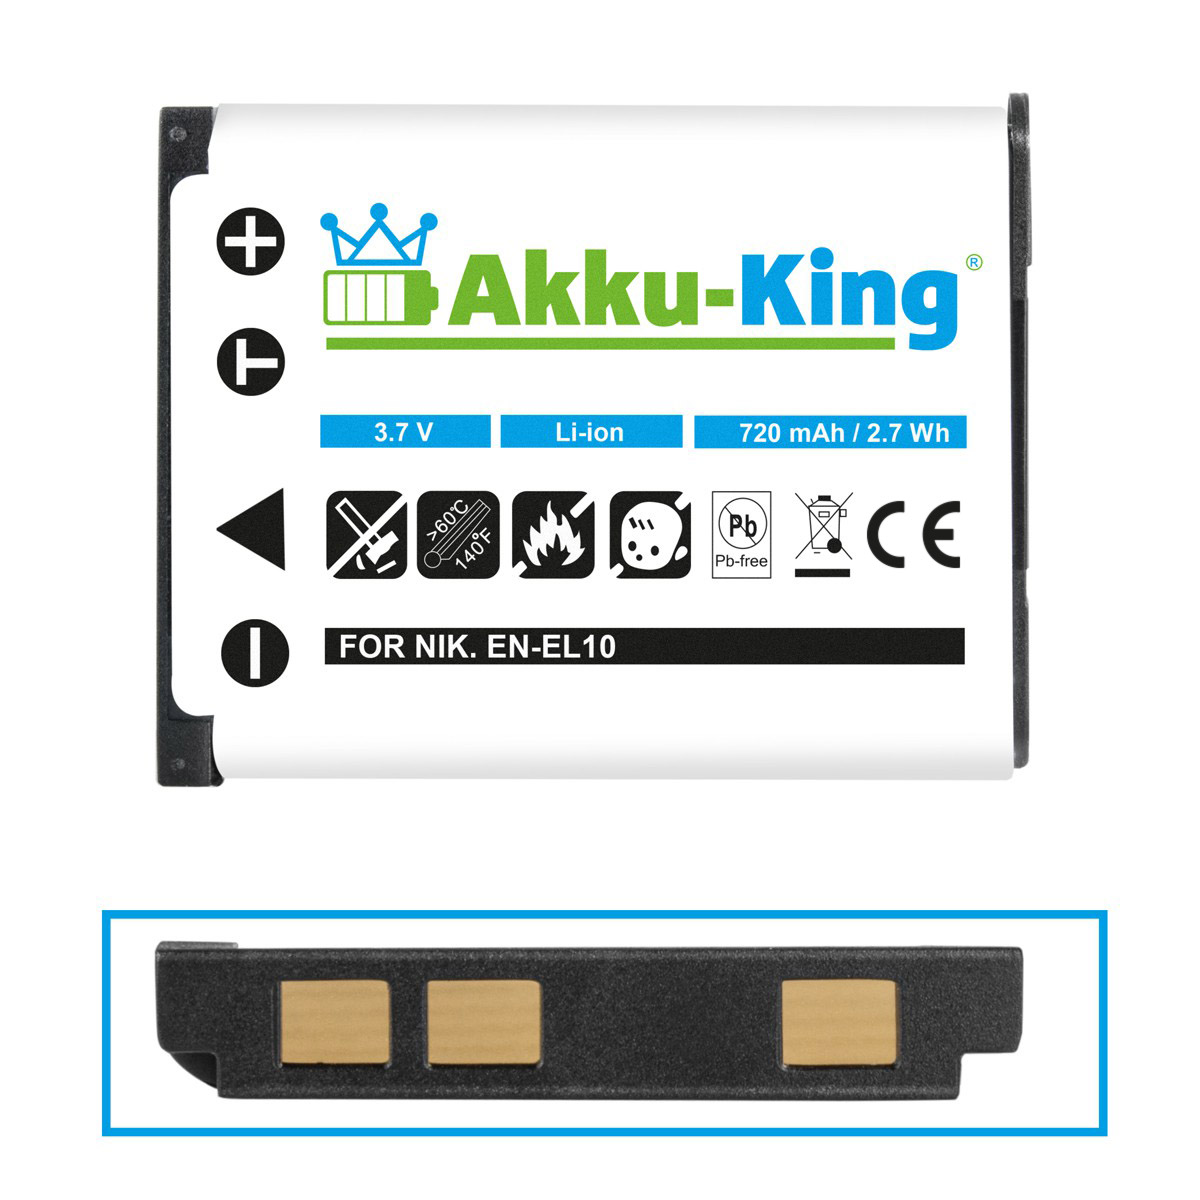 3.7 720mAh Kamera-Akku, D-Li108 kompatibel mit Li-Ion Akku Pentax AKKU-KING Volt,